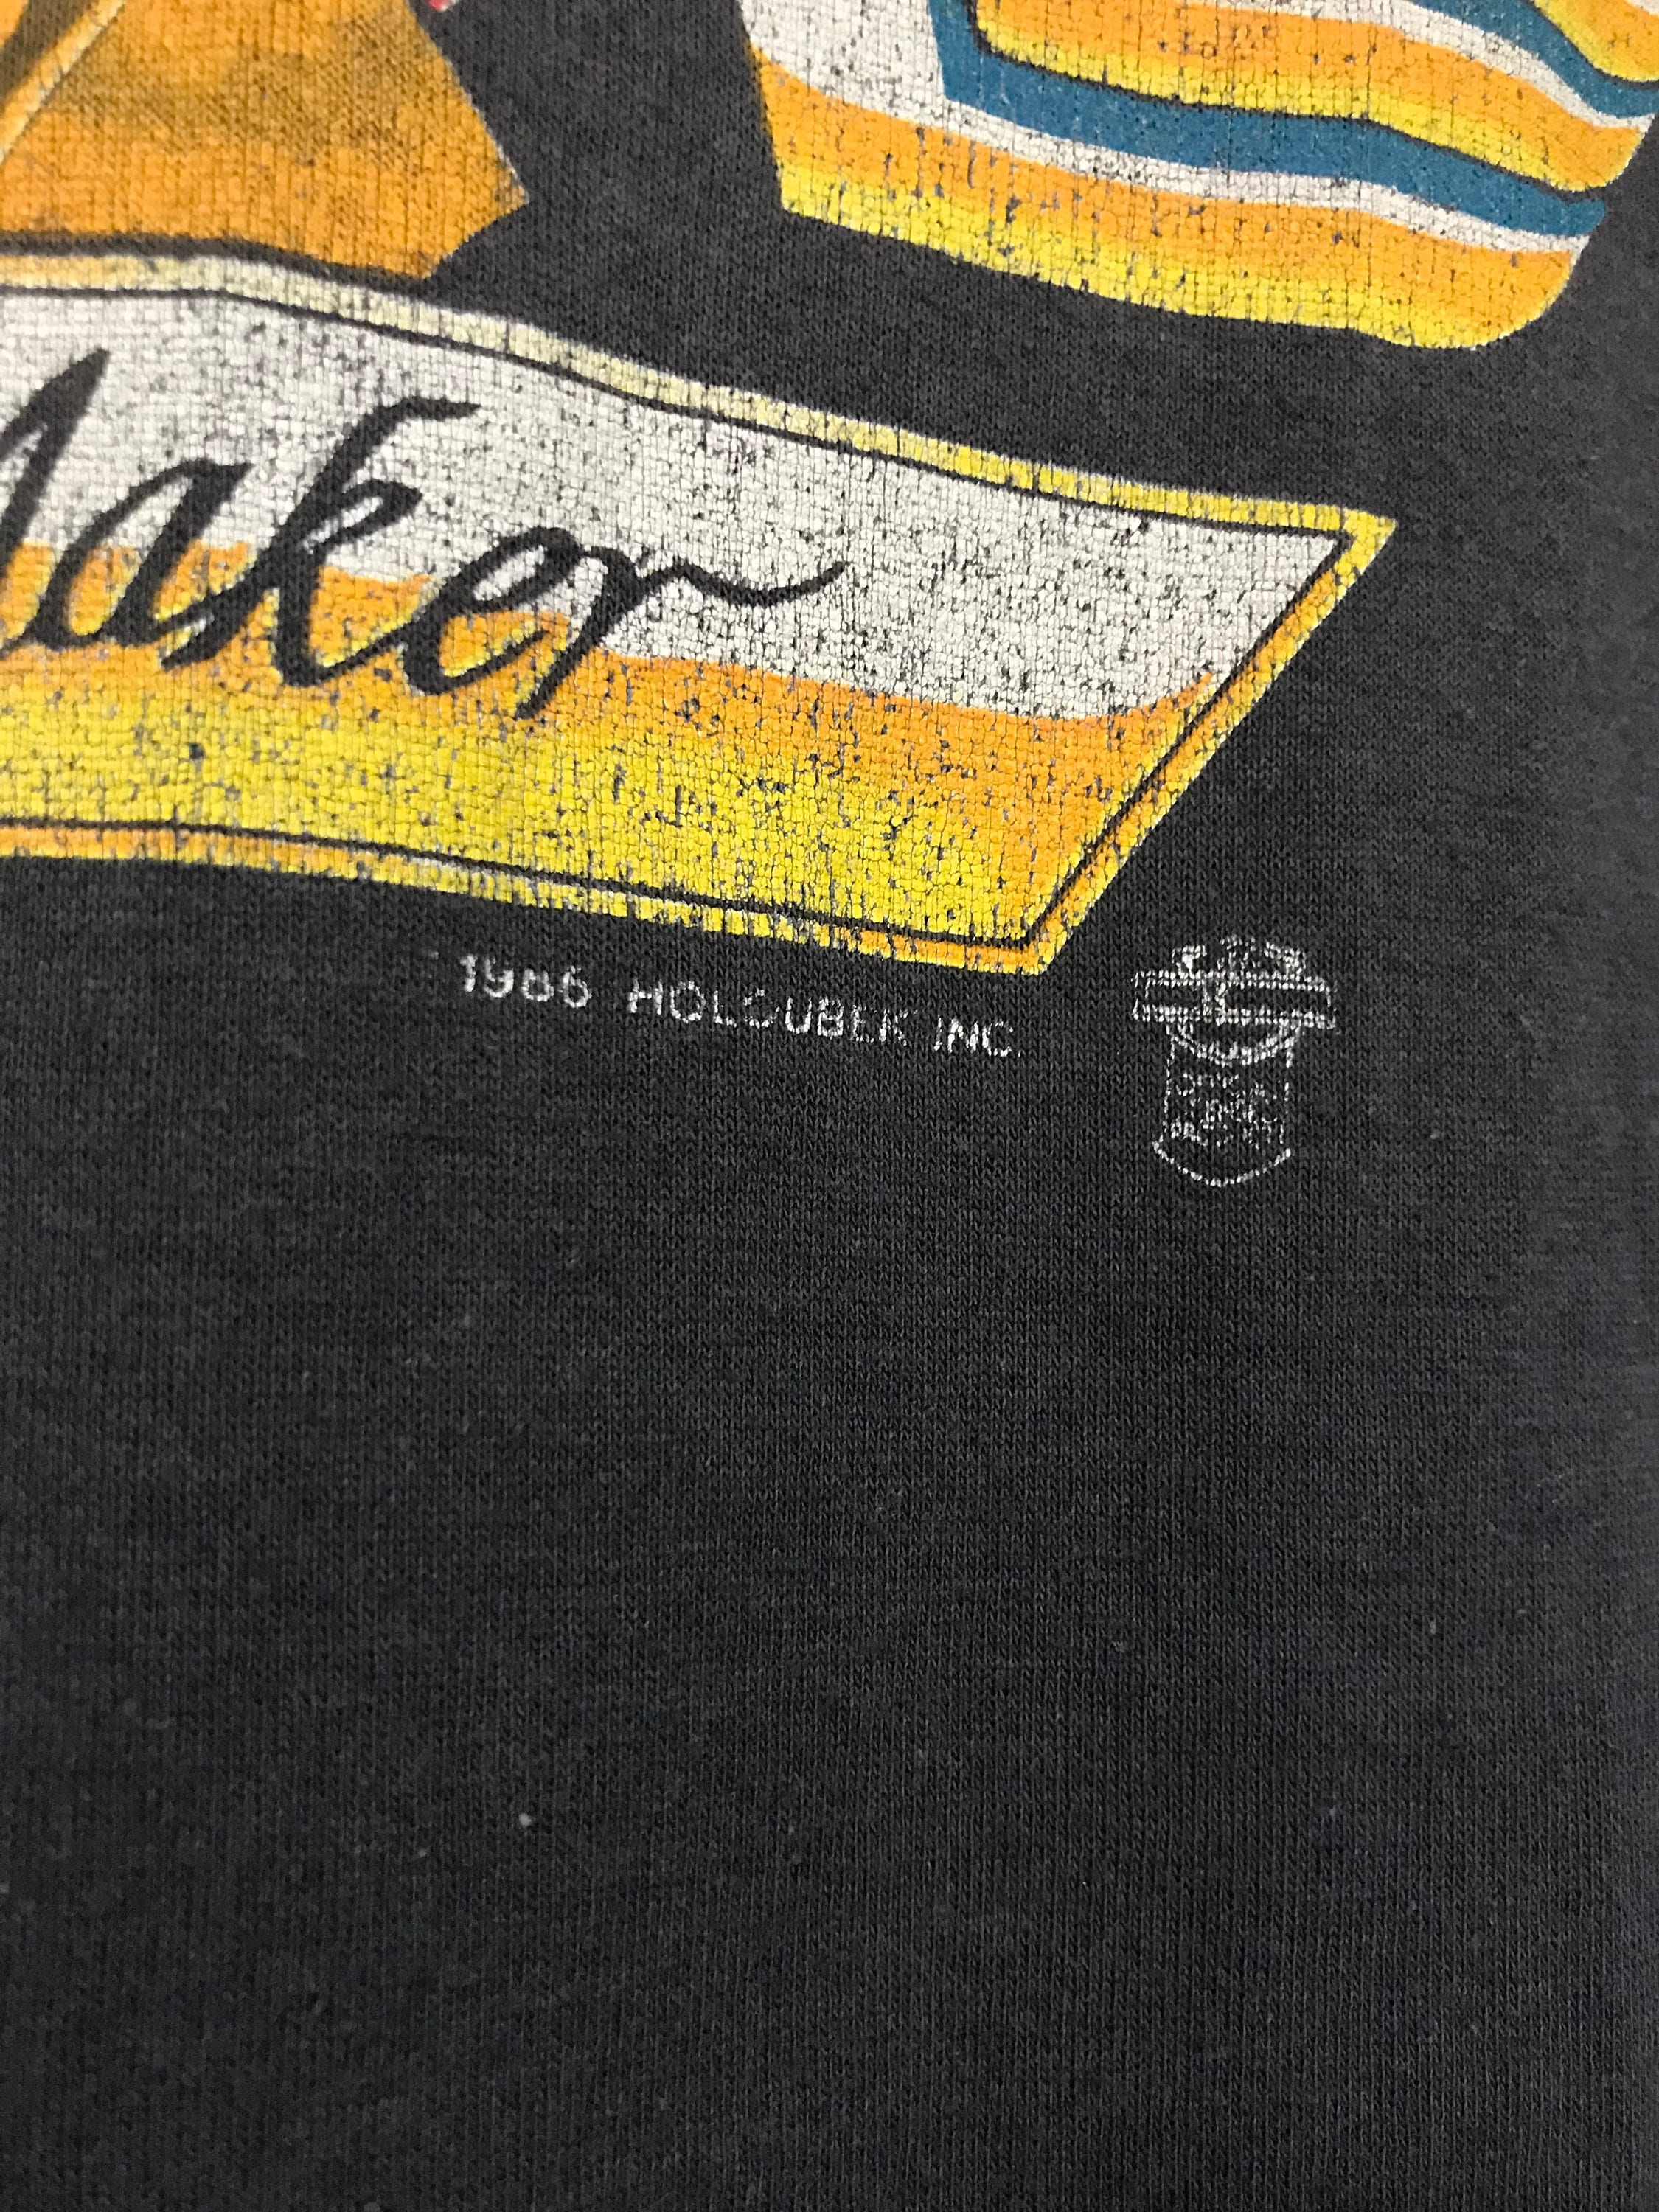 Vintage 1985 Harley Davidson T-shirt Rare Holoubek Legend - Etsy